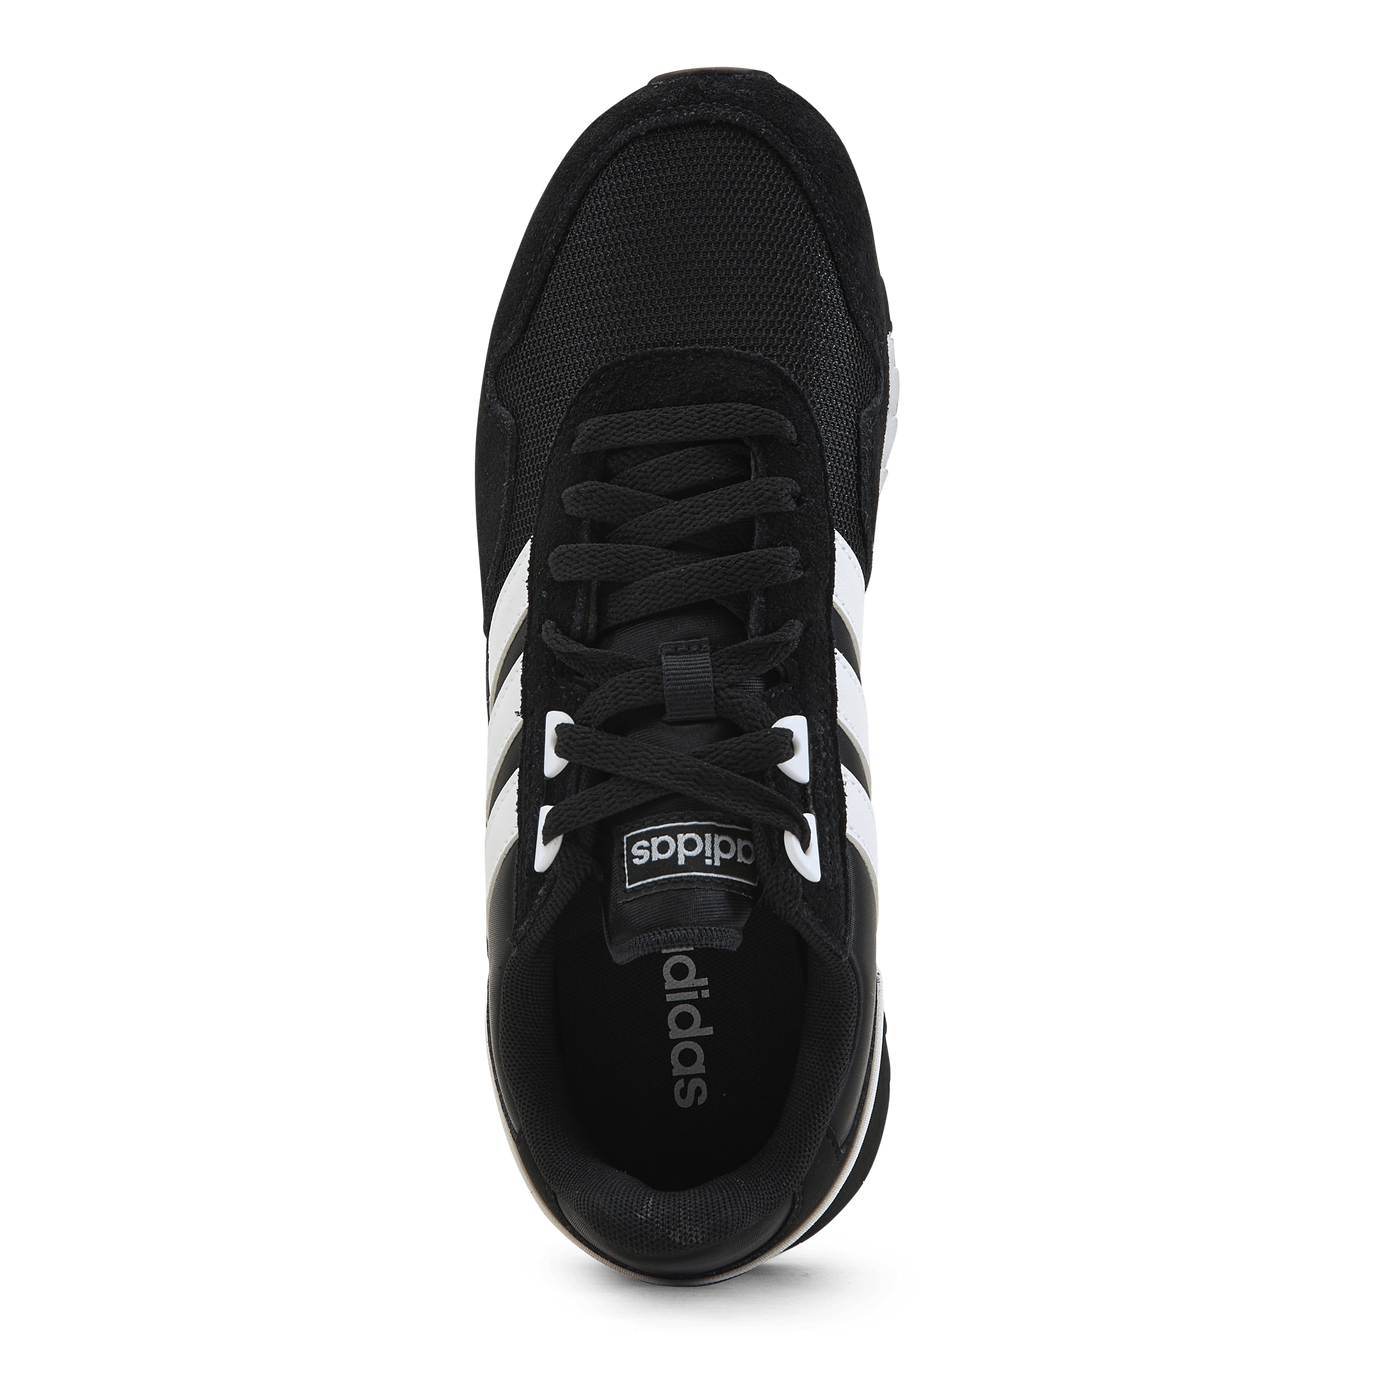 8K 2020 Shoes Core Black / Cloud White / Core Black